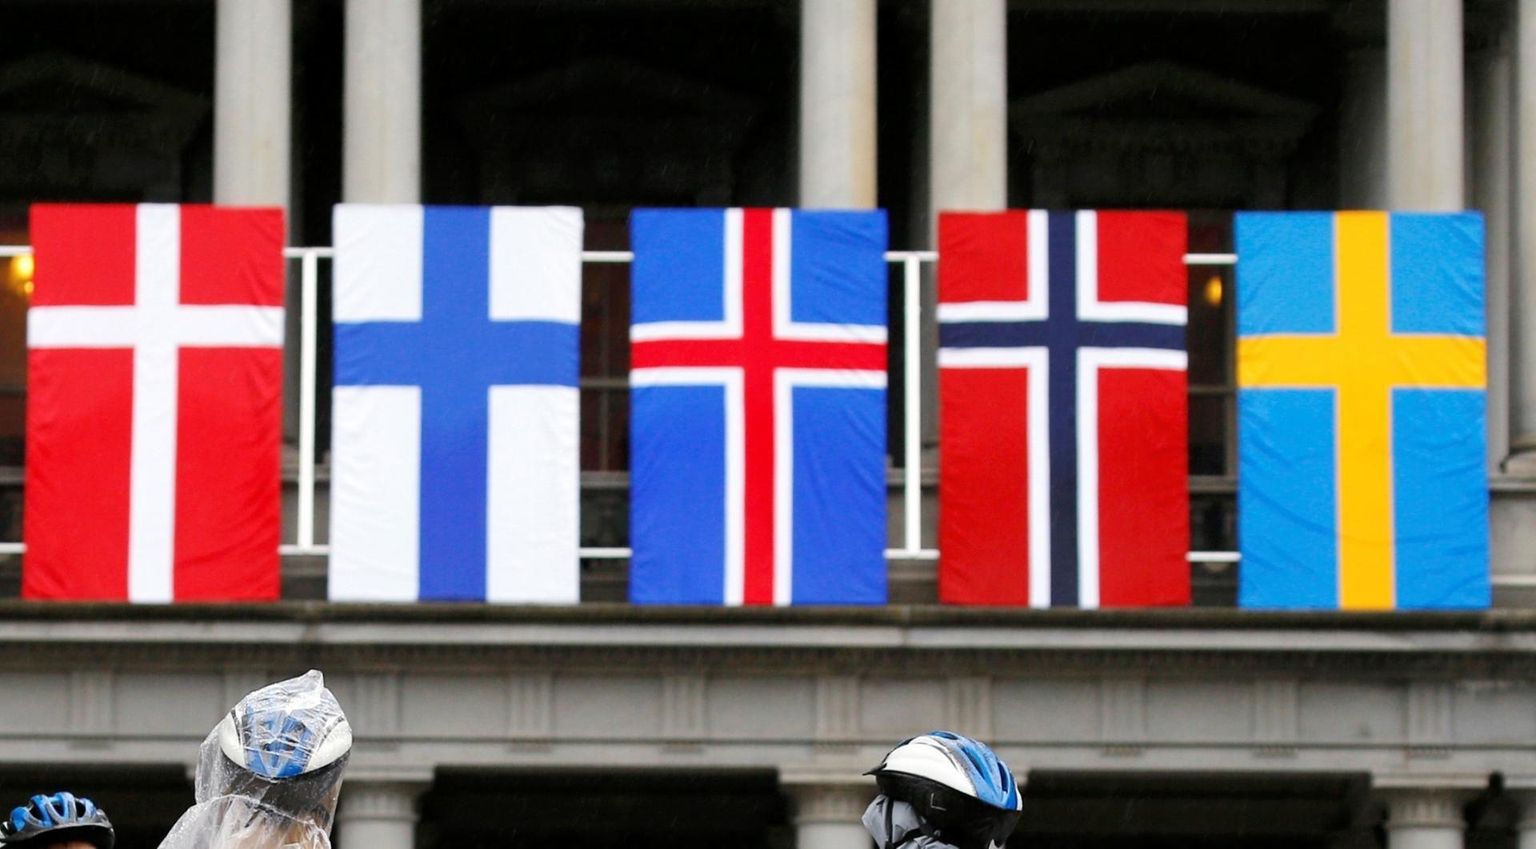 Põhjamaade riikide lipud: Taani (vasakult), Soome, Island, Norra ja Soome.